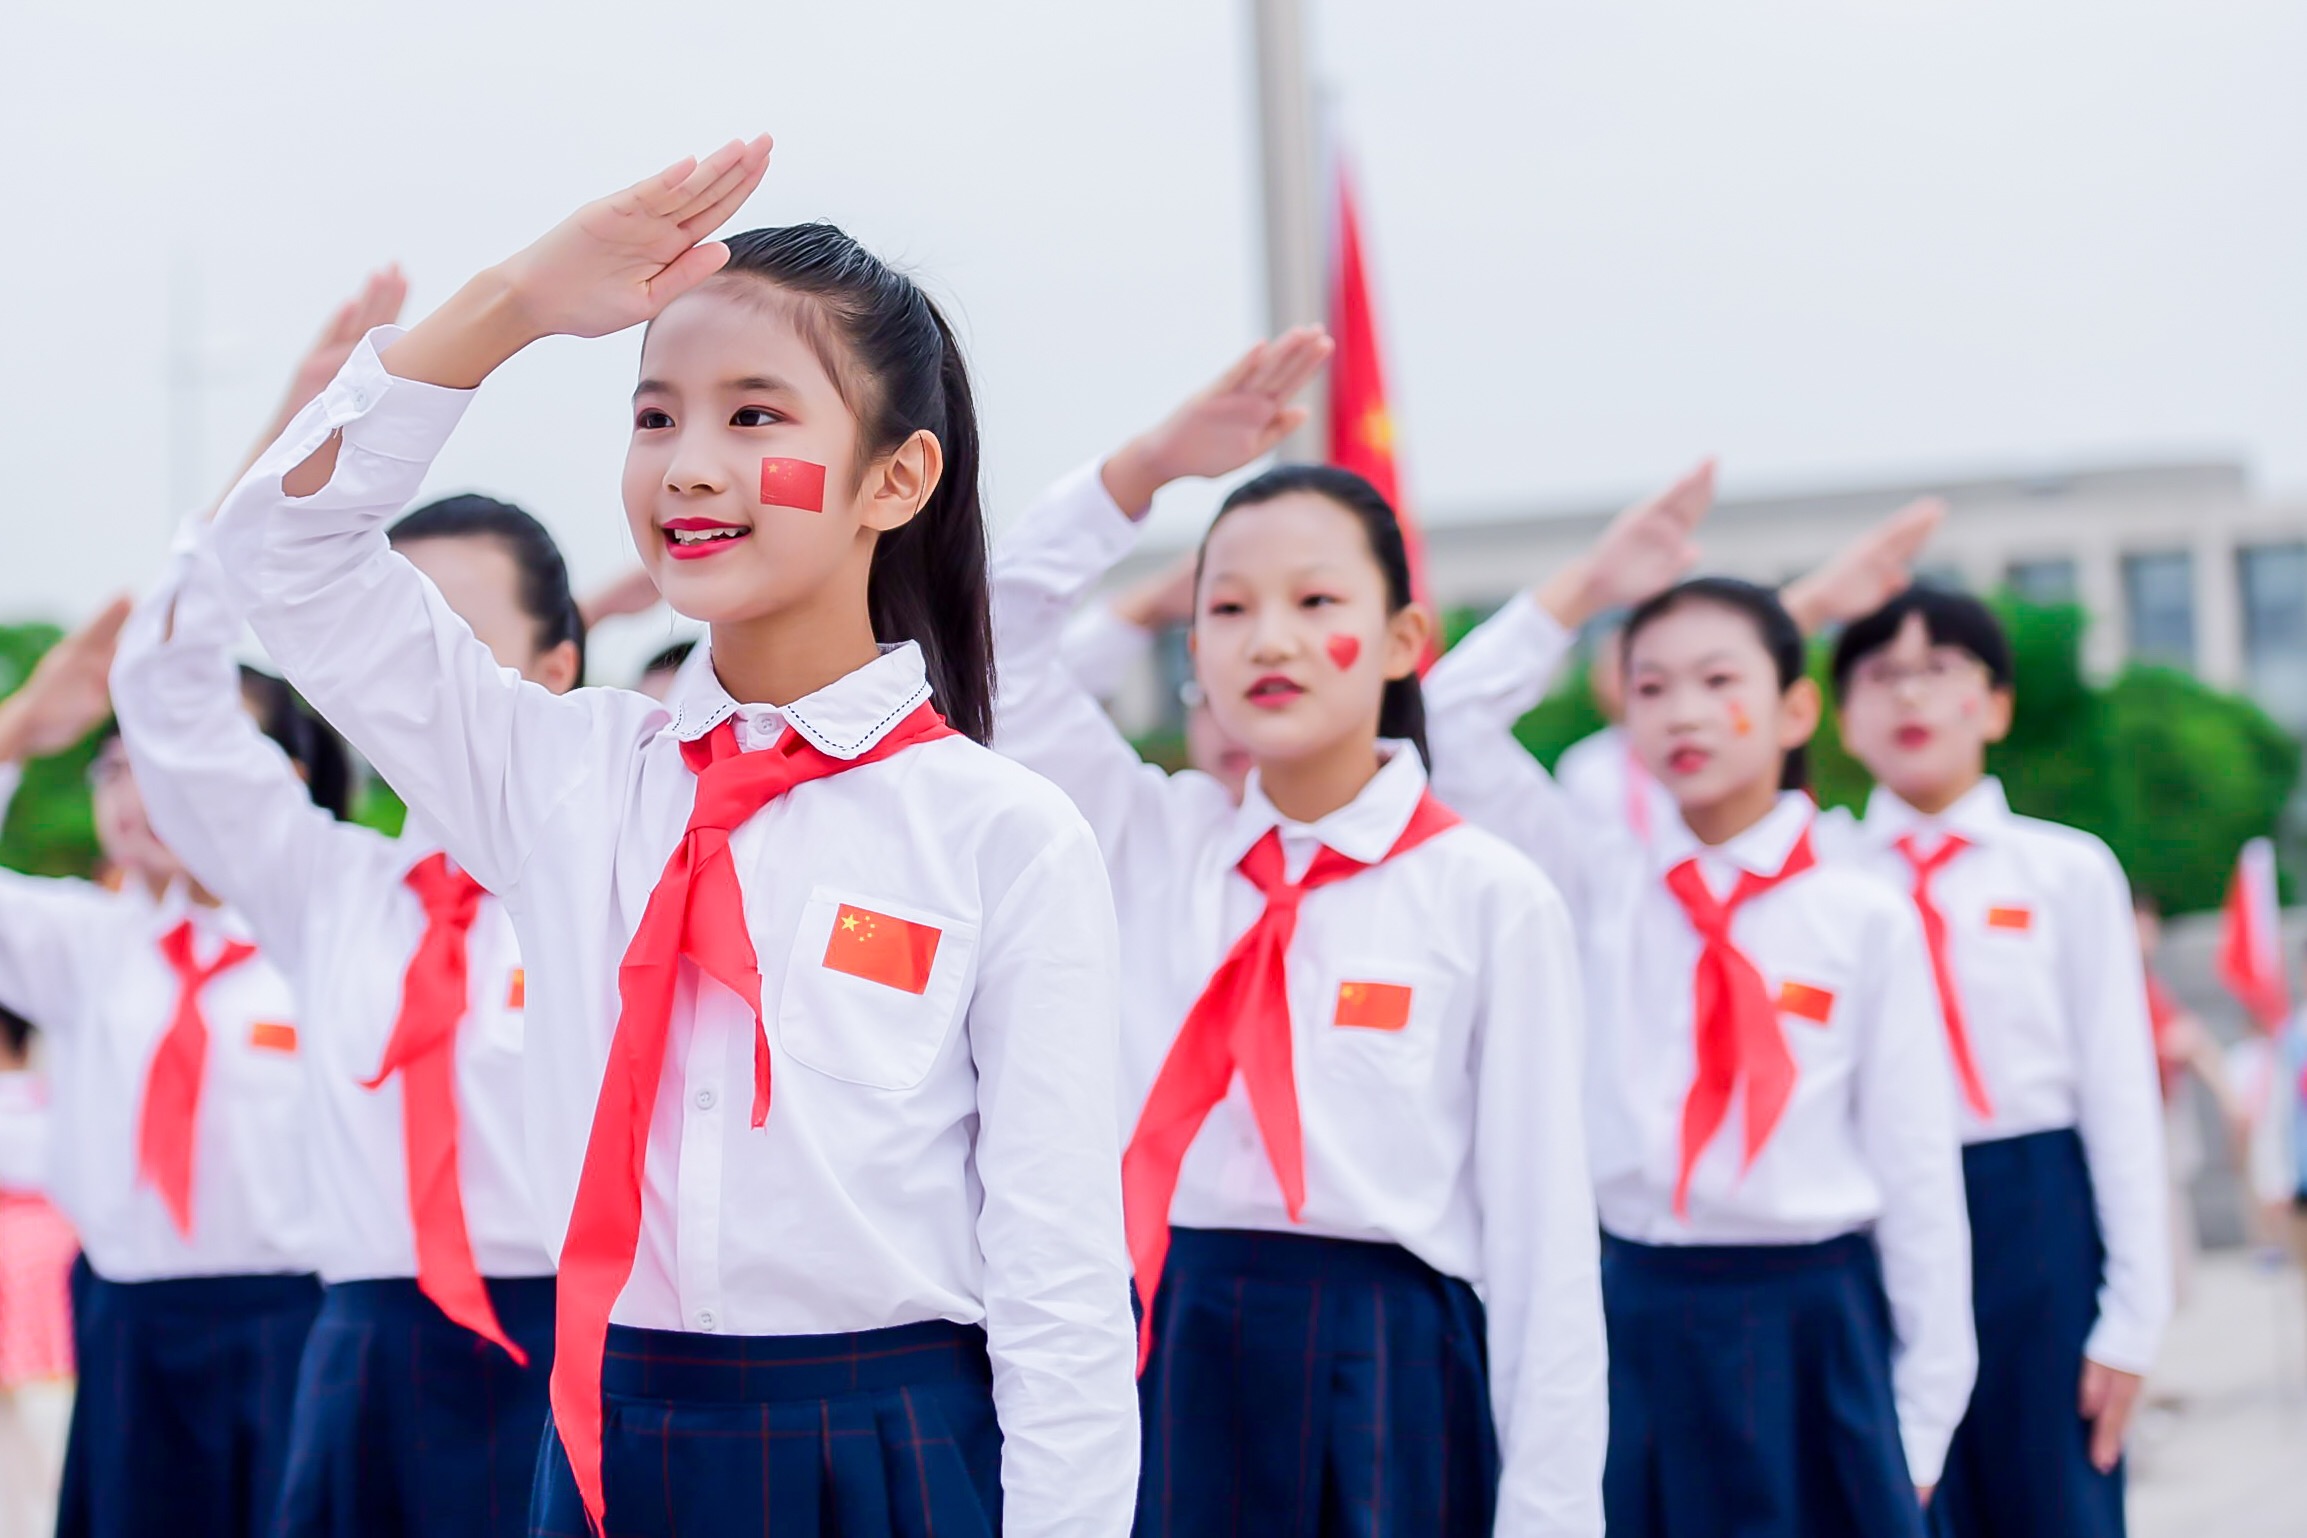 上海市陆行中学南校和谐发展育新人自信成长谱新歌